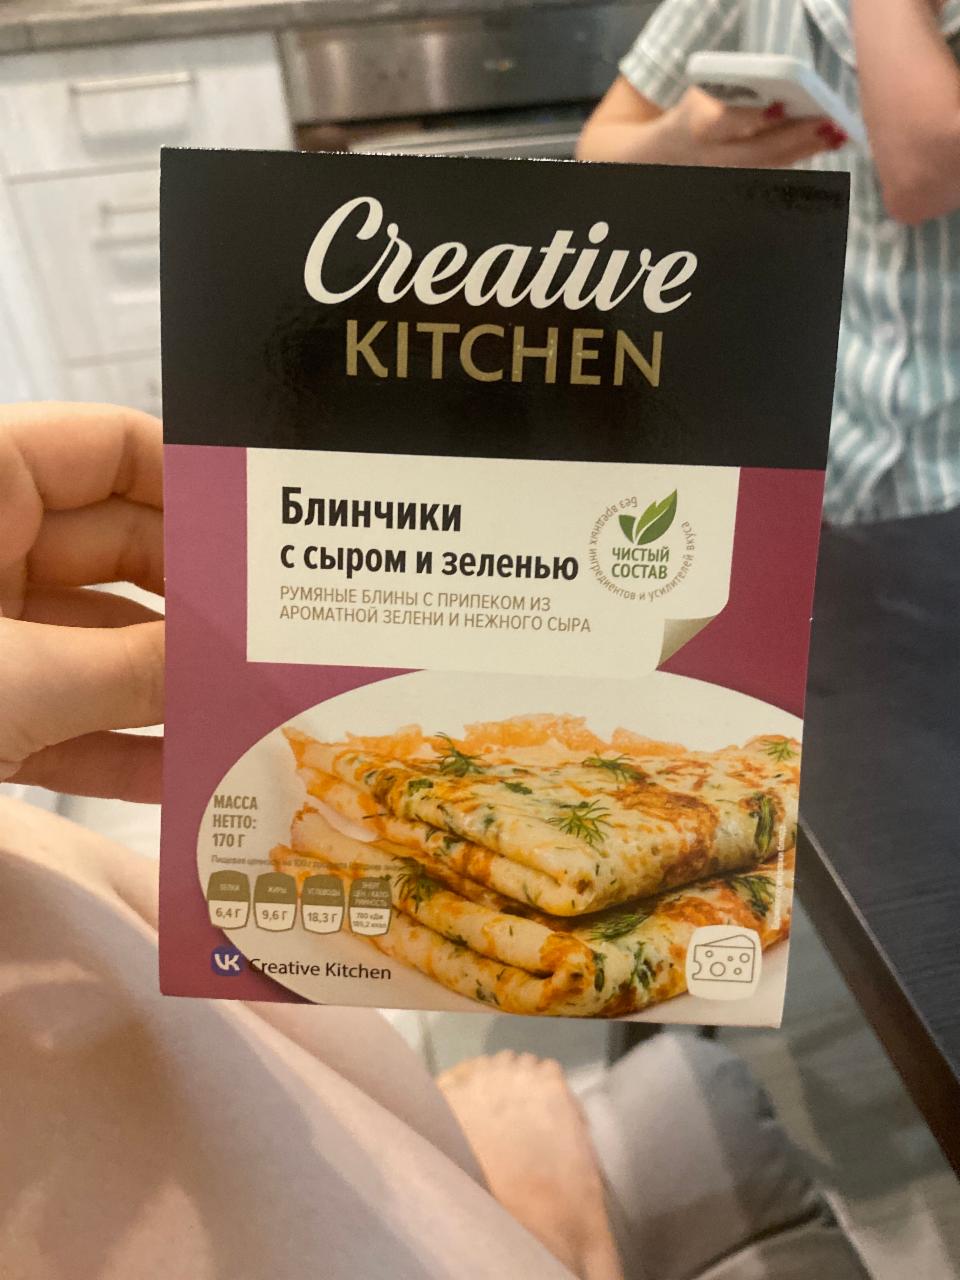 Фото - блинчики с сыром и зеленью Creative kitchen